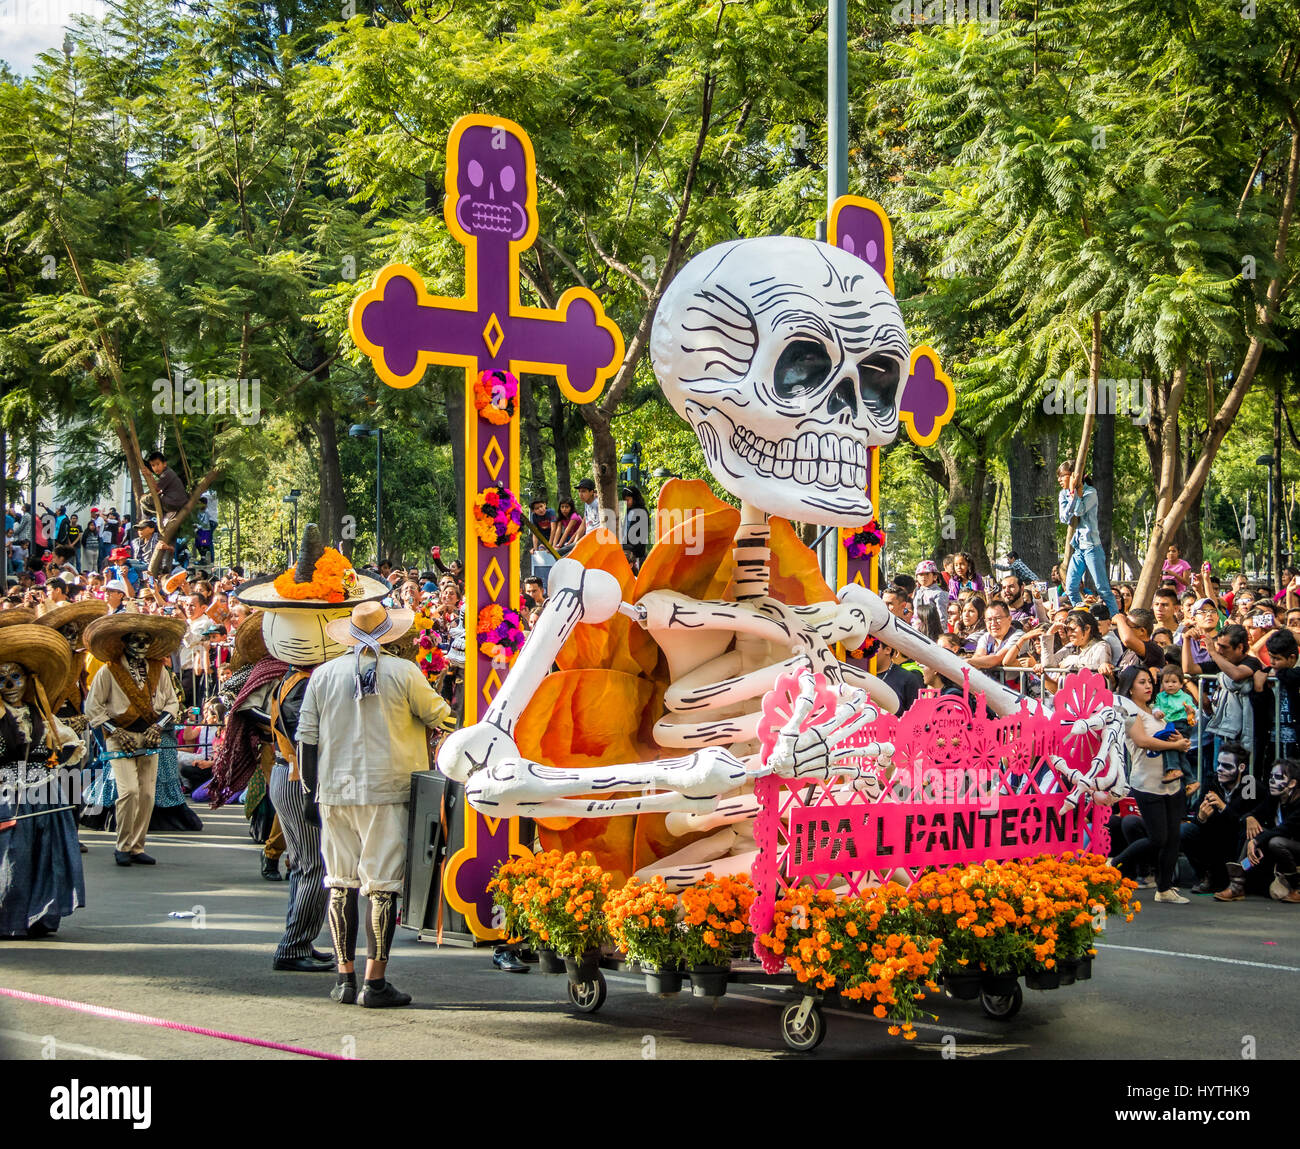 Day of the dead (Dia de los Muertos) parade in Mexico City - Mexico Stock  Photo - Alamy